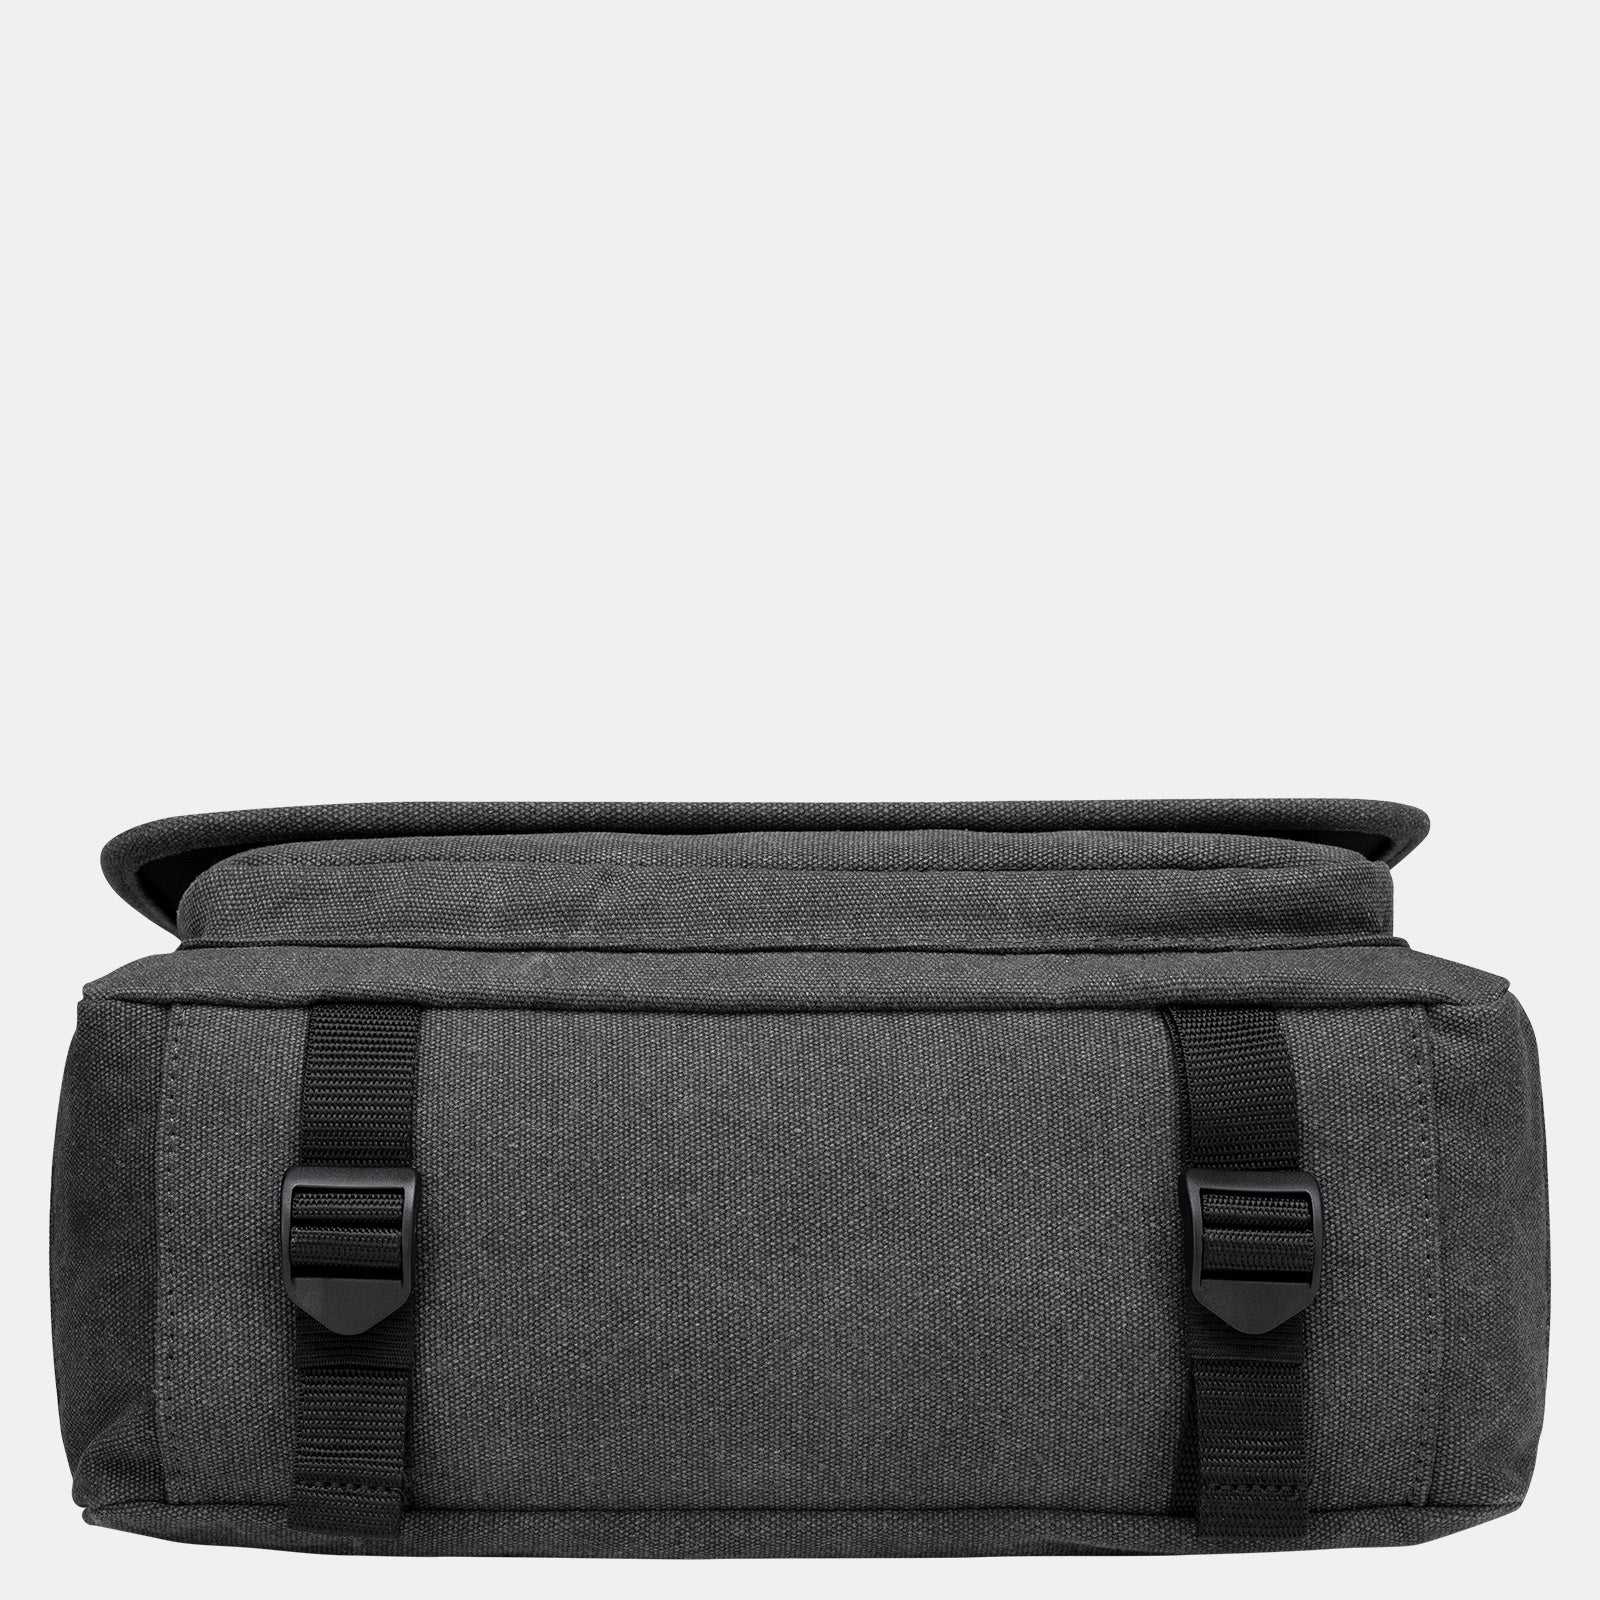 Estarer Velcro Laptop Messenger Bag Grey